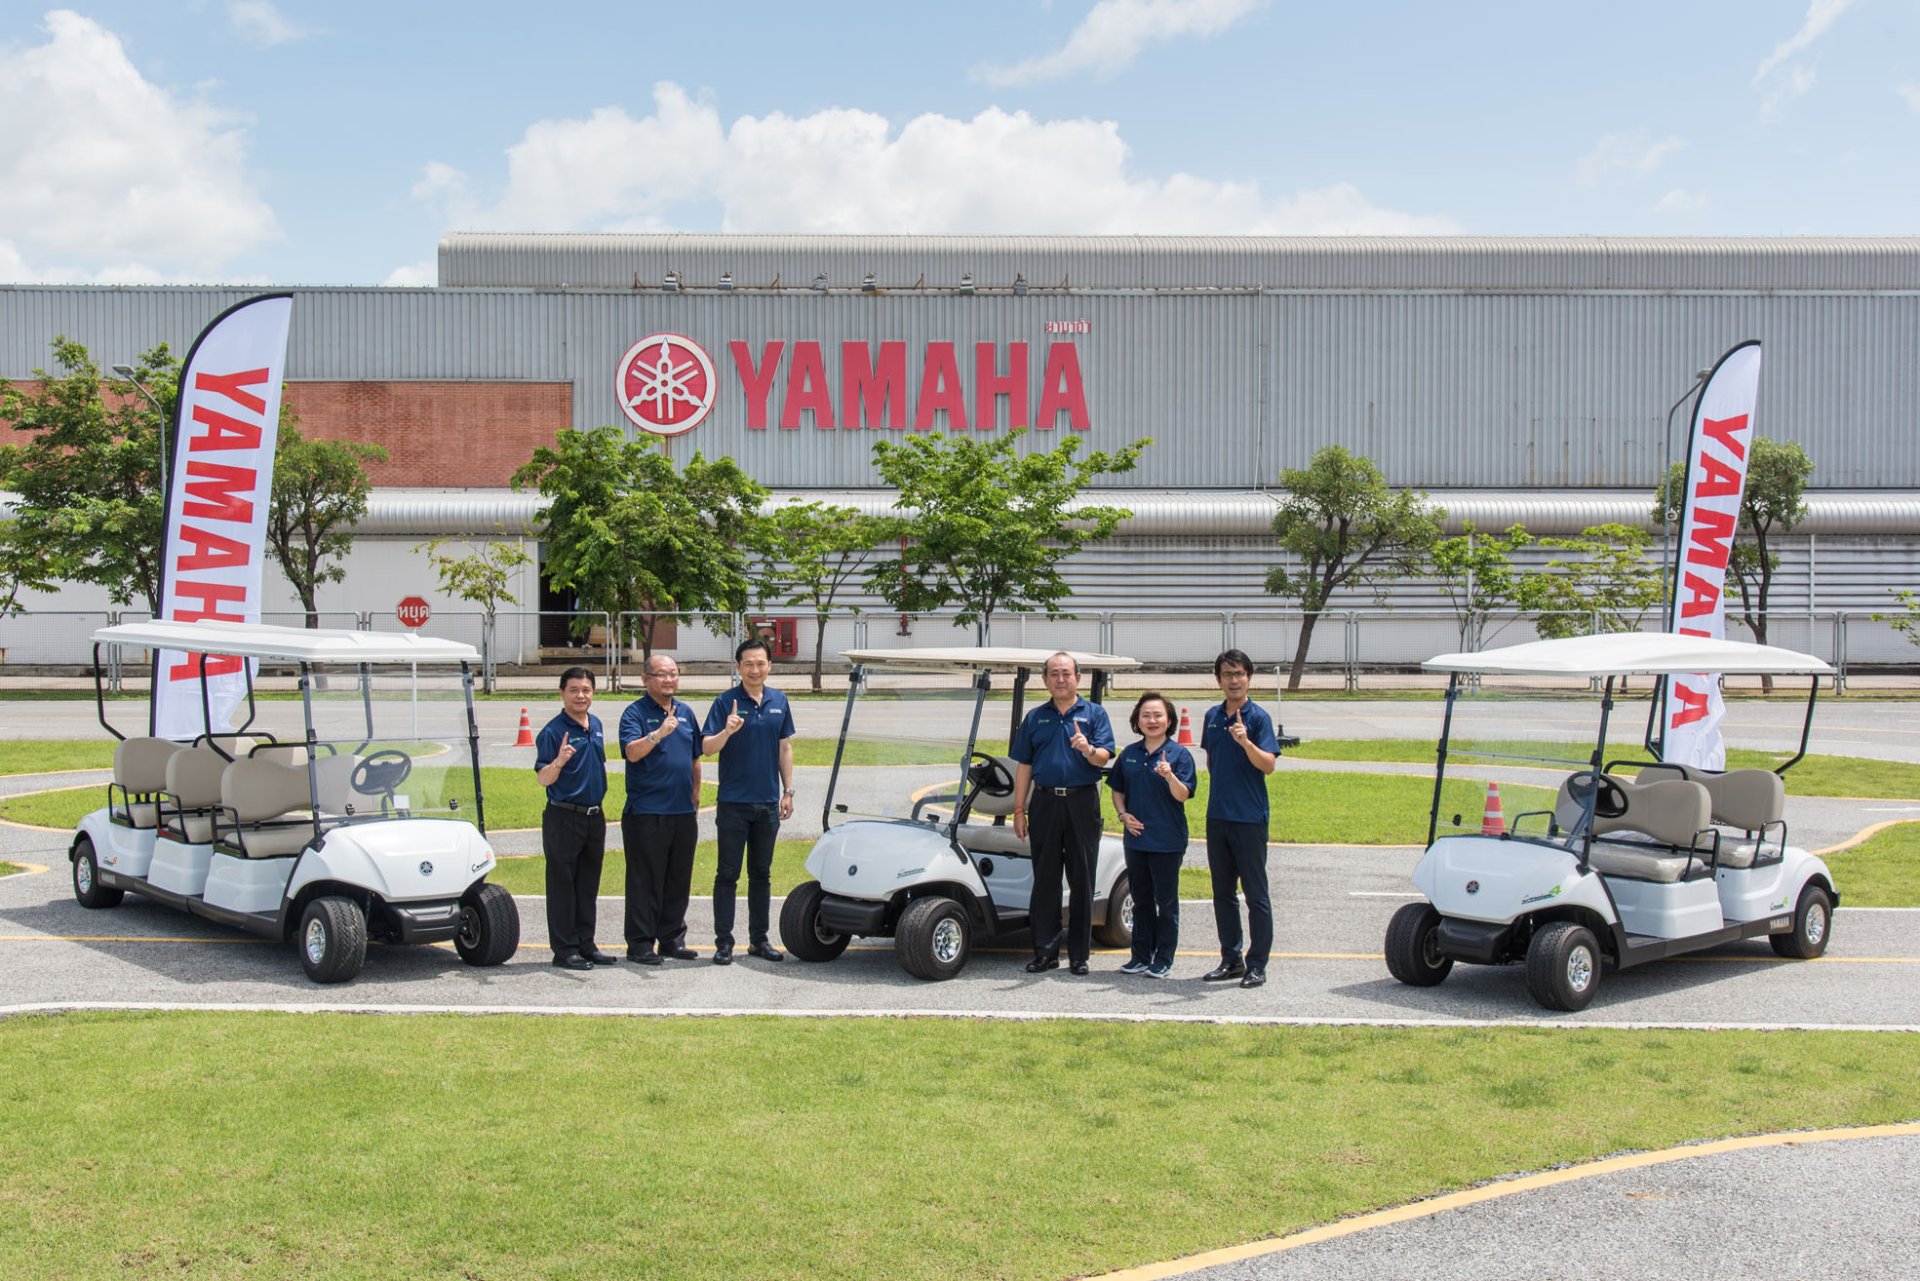 ยามาฮ่ารุกตลาดรถกอล์ฟ ตั้งไทยเป็นฐานการผลิต พร้อมจำหน่ายและส่งออก ตั้งเป้าเบอร์หนึ่งตลาดเมืองไทย 